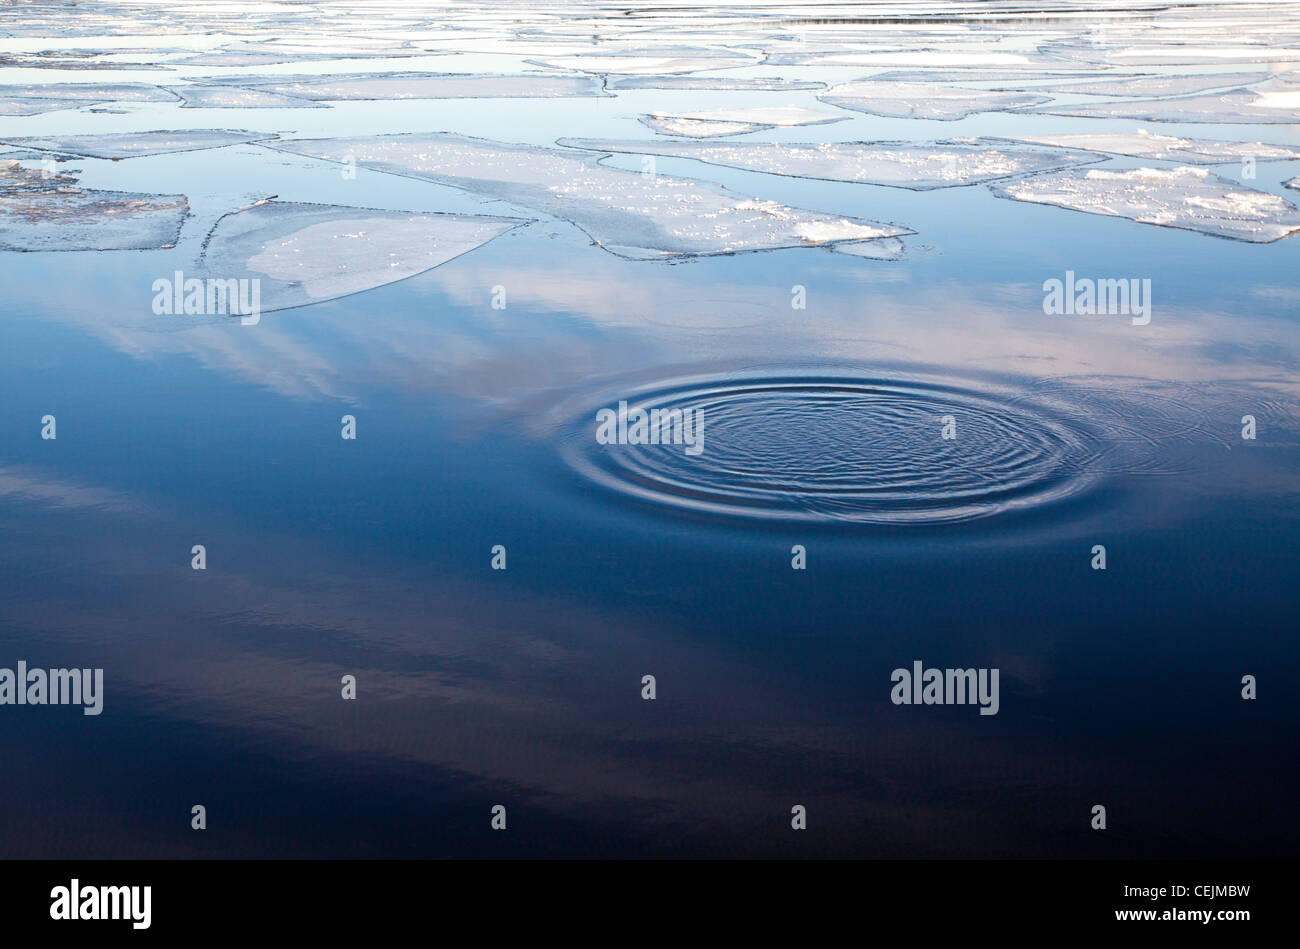 Minimalist photo of ripples in the partially frozen Baltic sea in Tallinn, Estonia Stock Photo